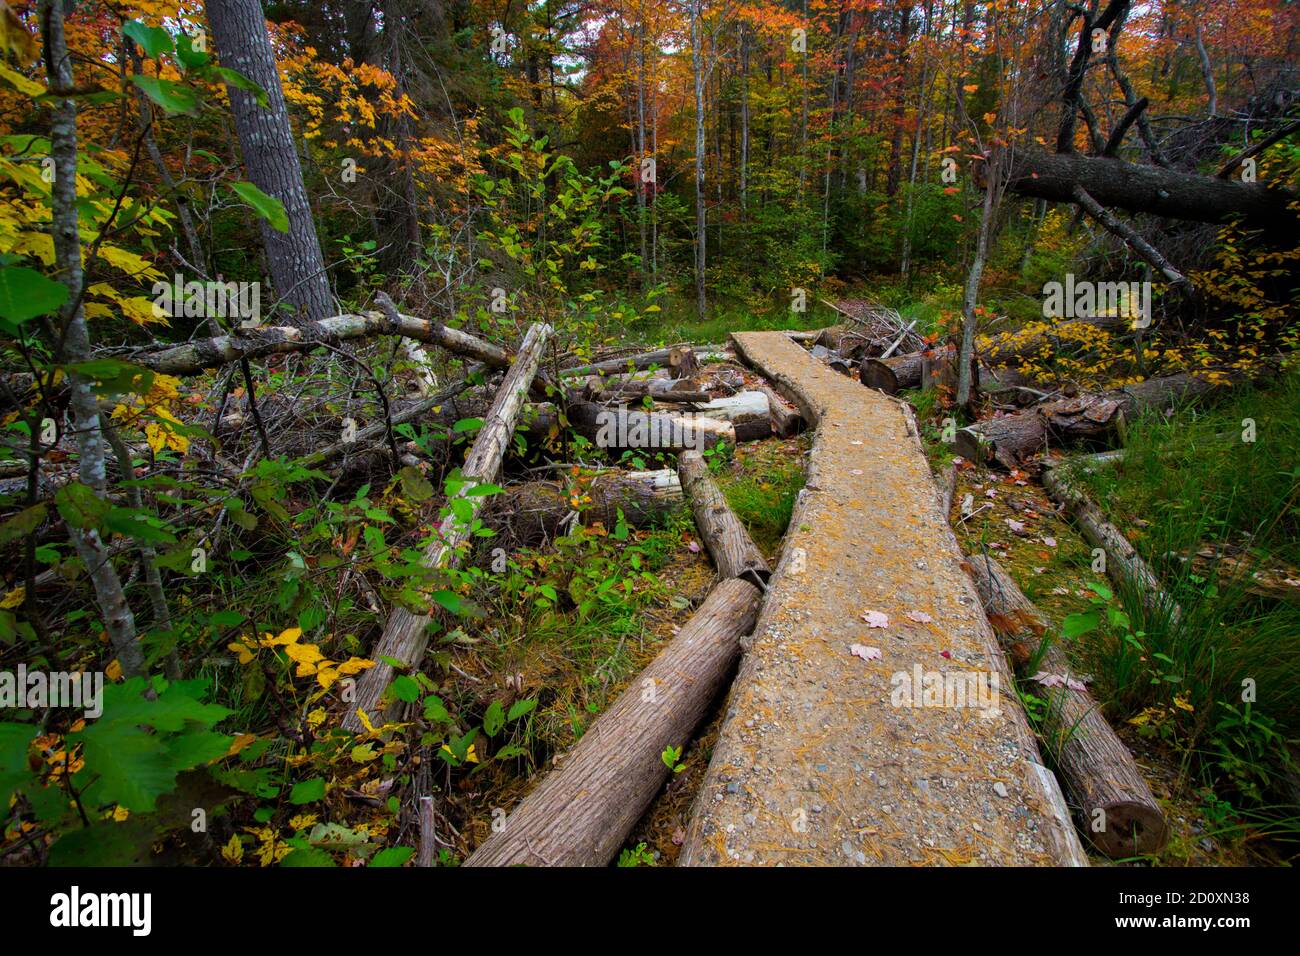 Michigan randonnée d'automne. Couleurs vives de l'automne le long d'un sentier de randonnée à travers la forêt de feuillus du parc régional Hartwick Pines à Grayling, Michigan. Banque D'Images